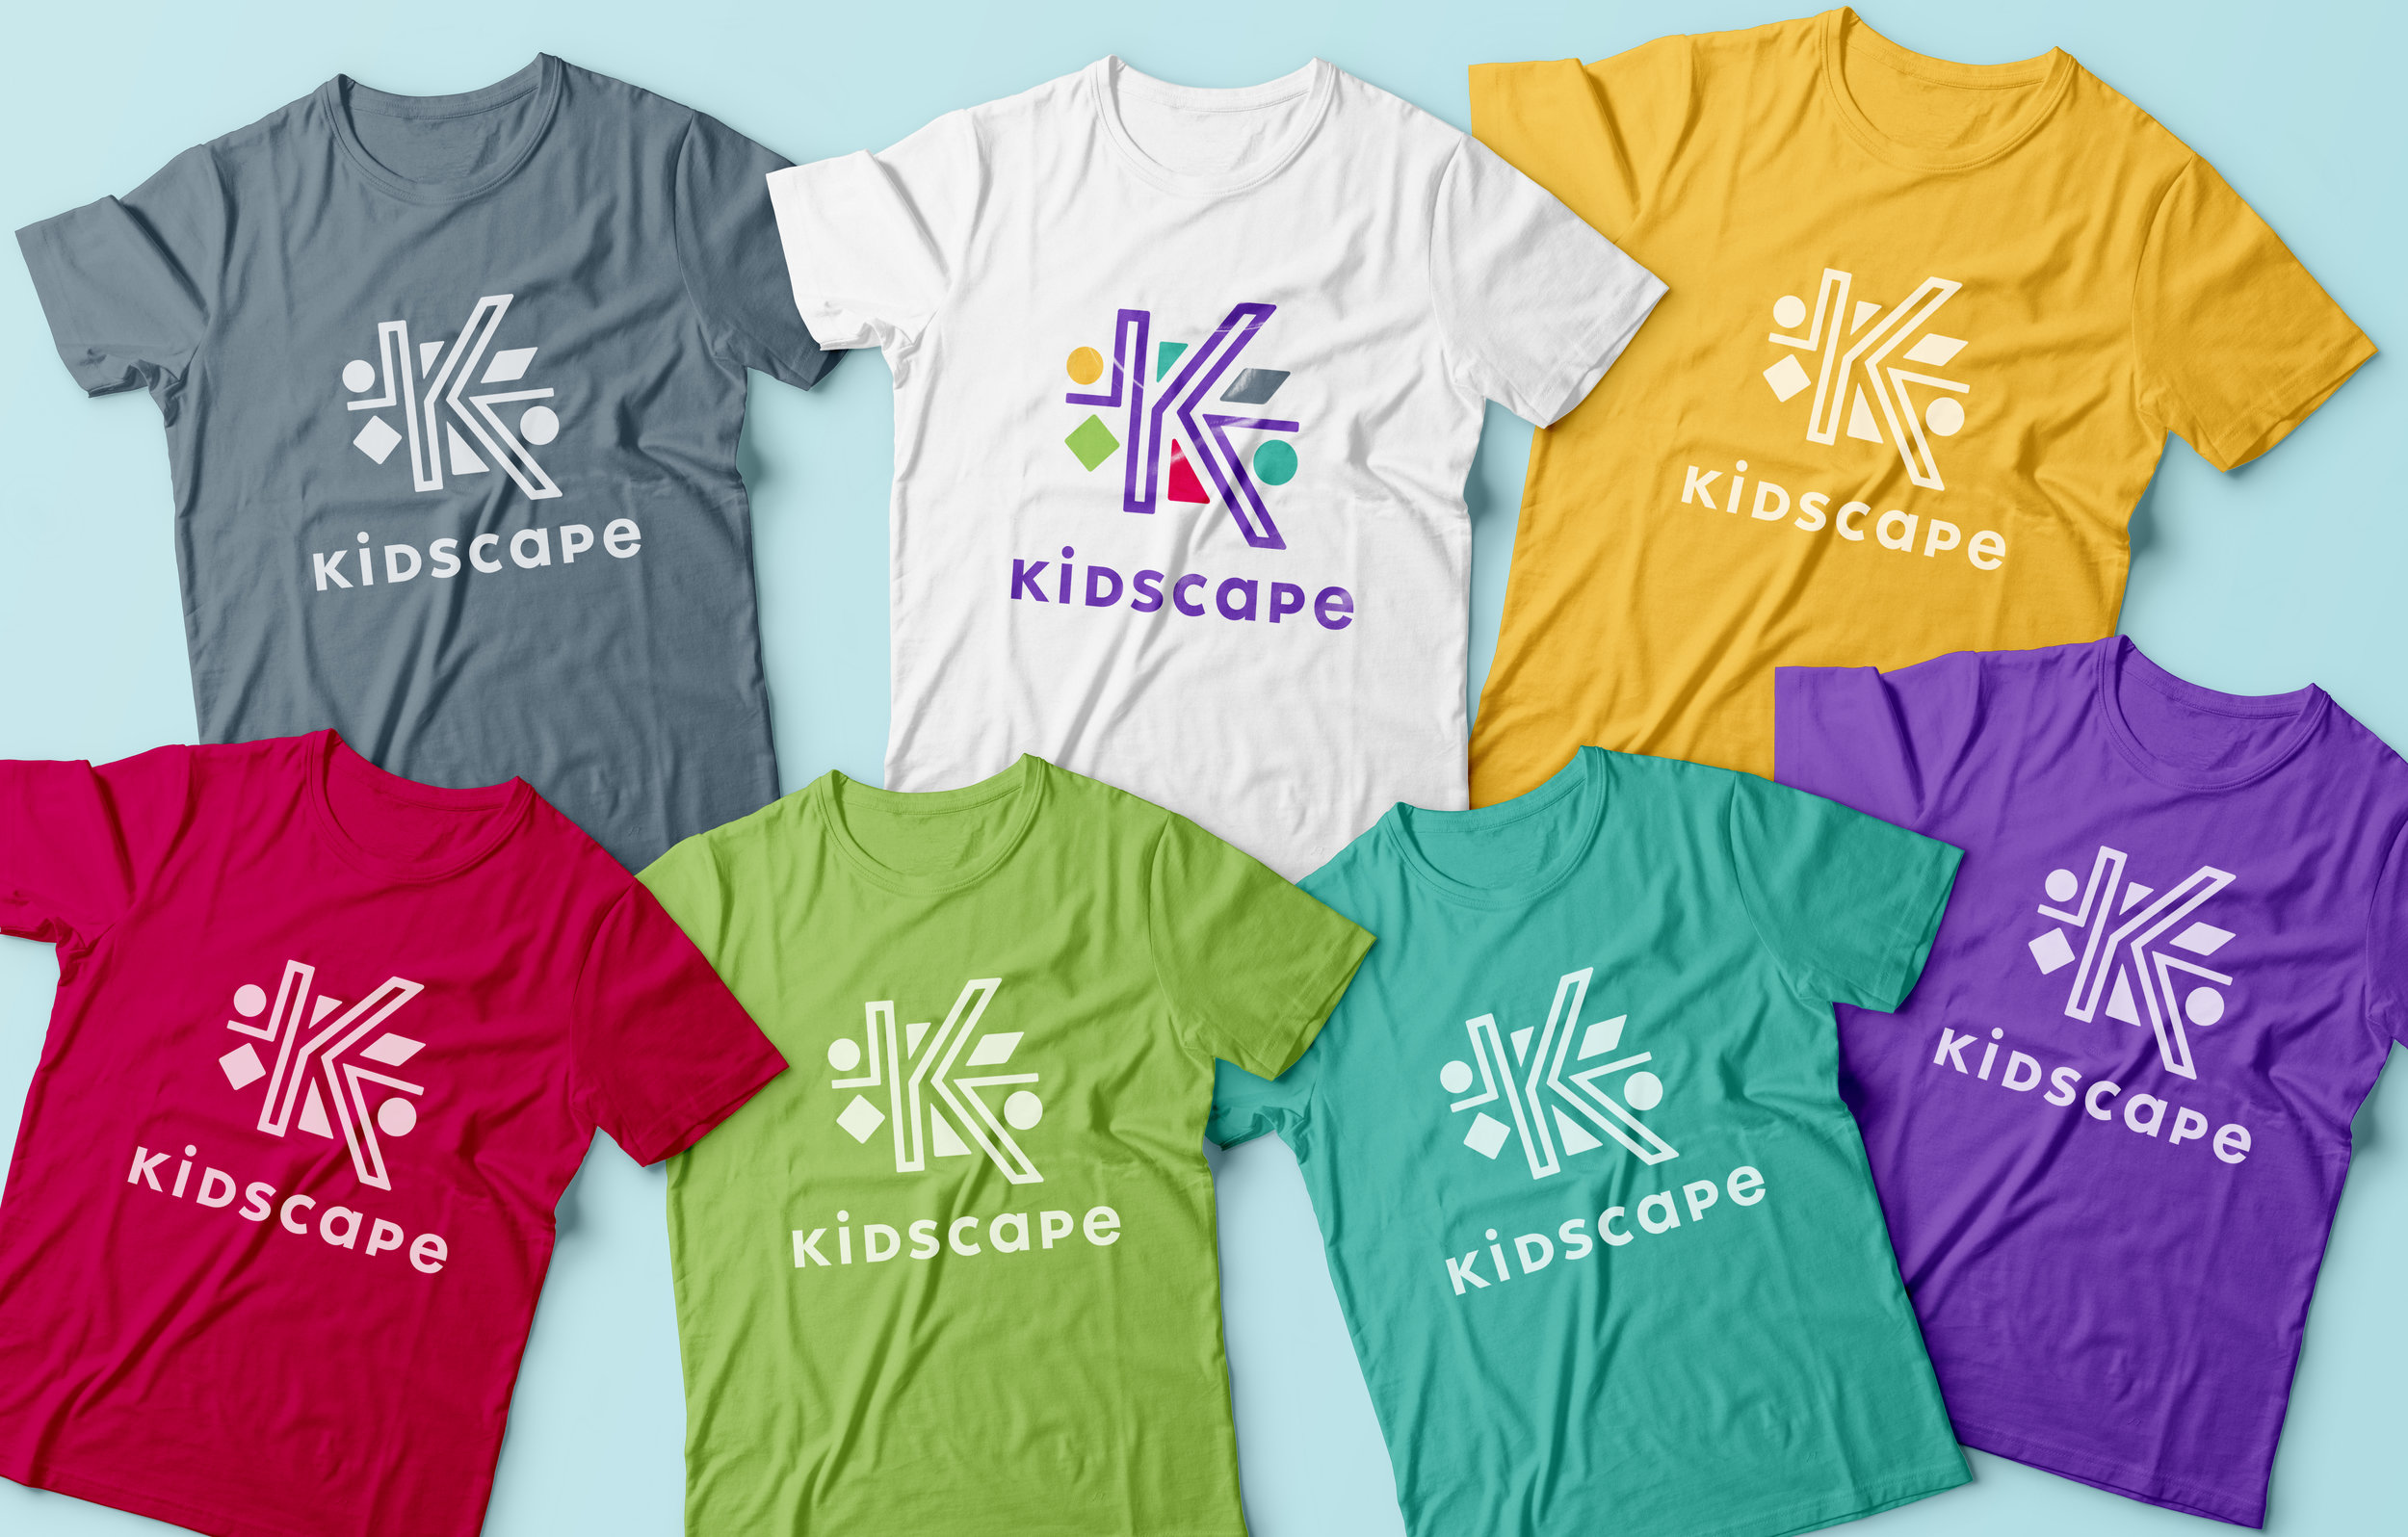 Kidscape_T-shirts_MockUP.jpg